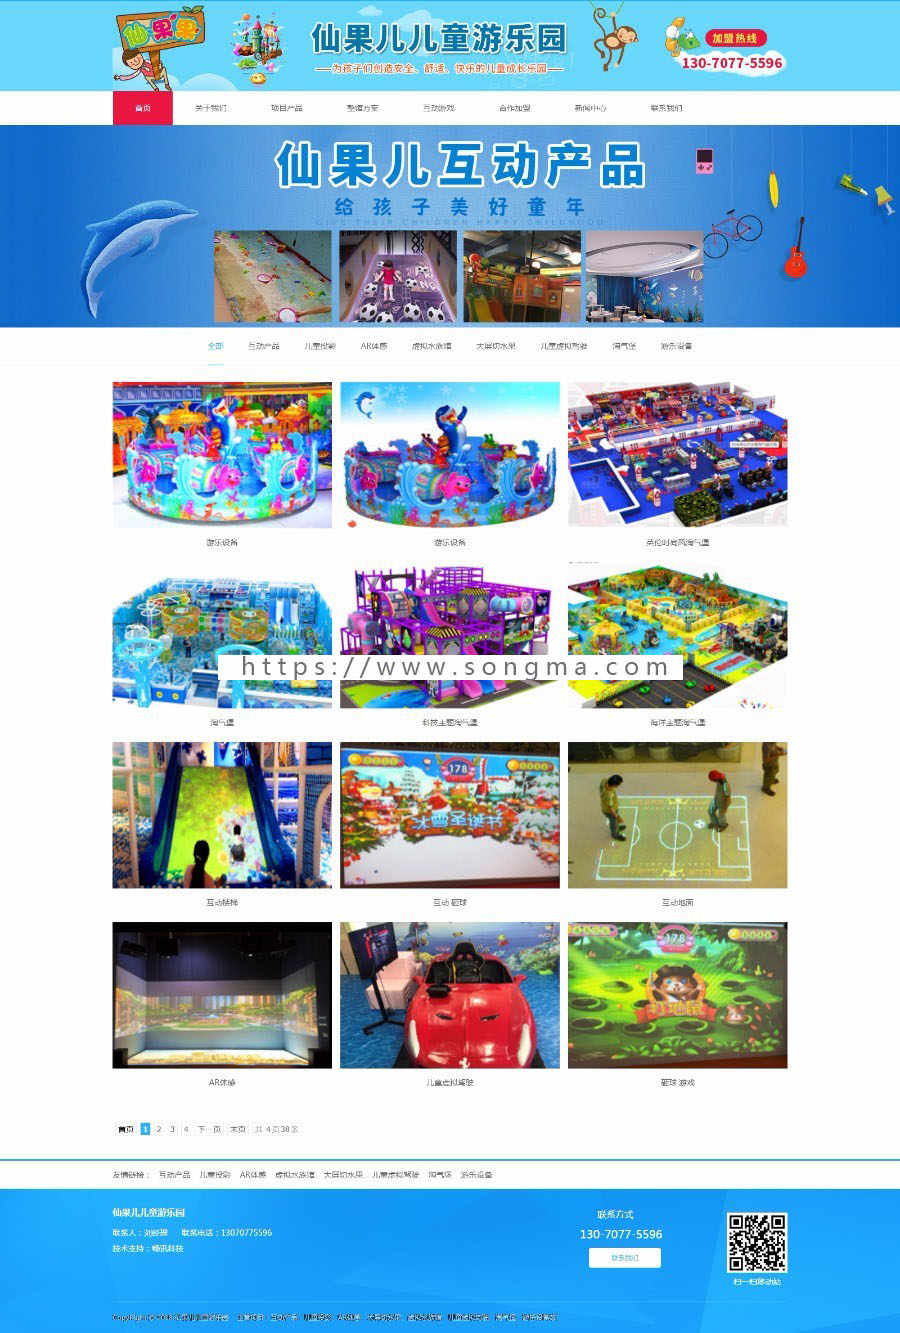 [整站+手机版]儿童投影,AR体感,虚拟水族馆,儿童虚拟驾驶,淘气堡,游乐设备仙果儿儿童游乐园